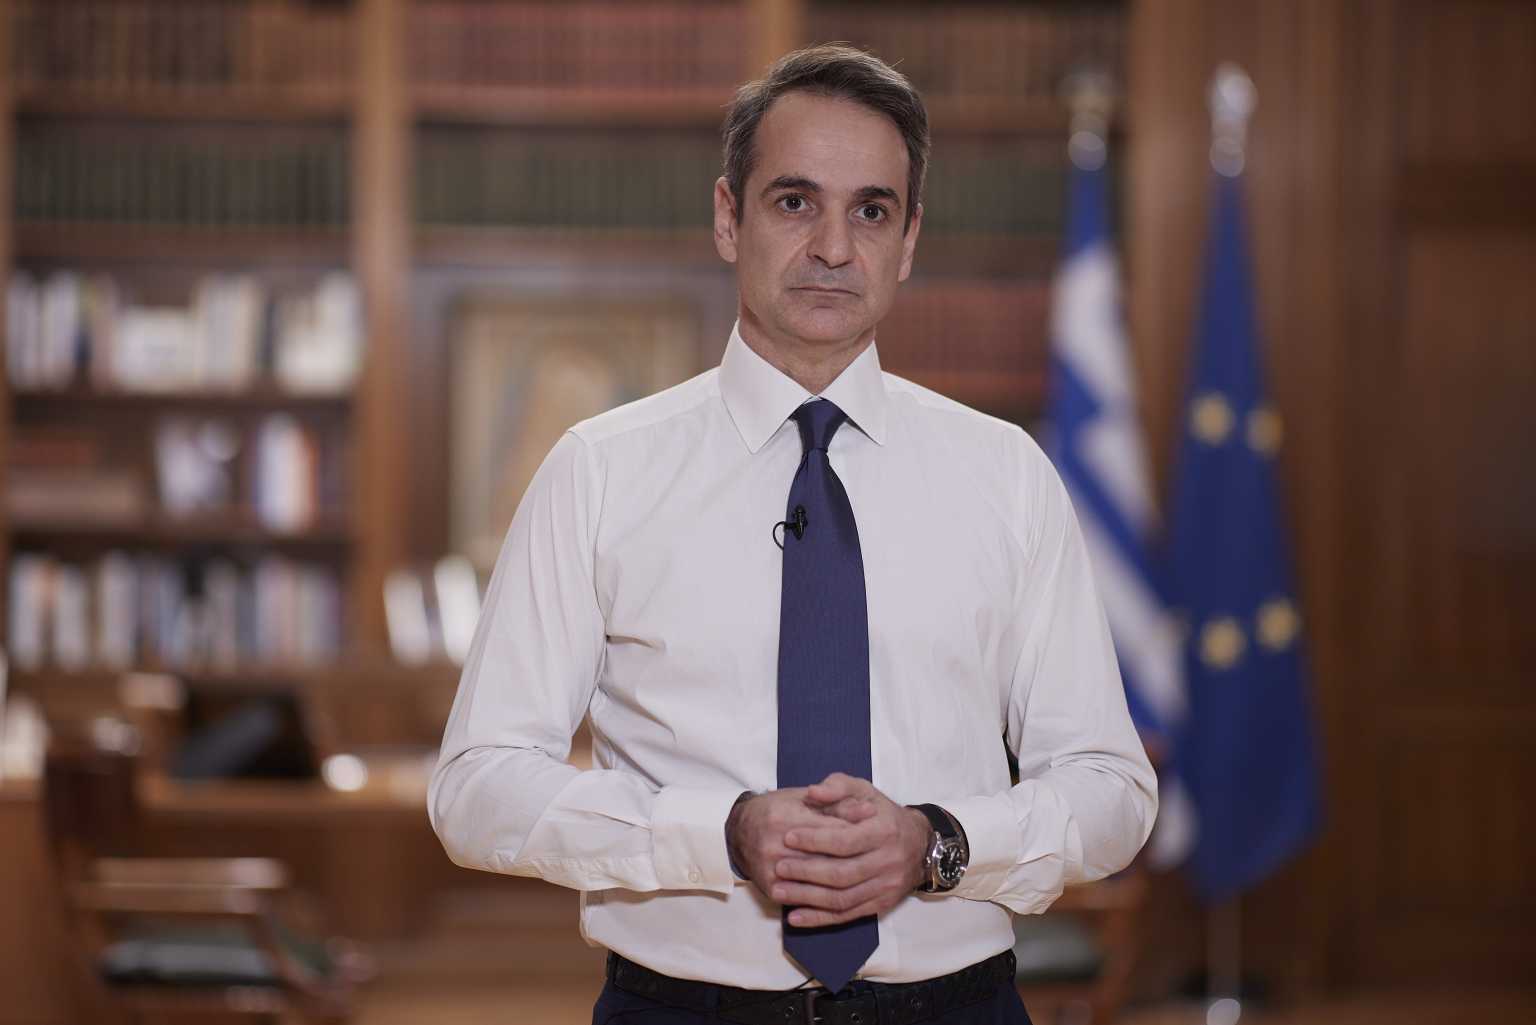 Μητσοτάκης: “Θα είμαι Πρωθυπουργός όλων των Ελλήνων” (ΒΙΝΤΕΟ)